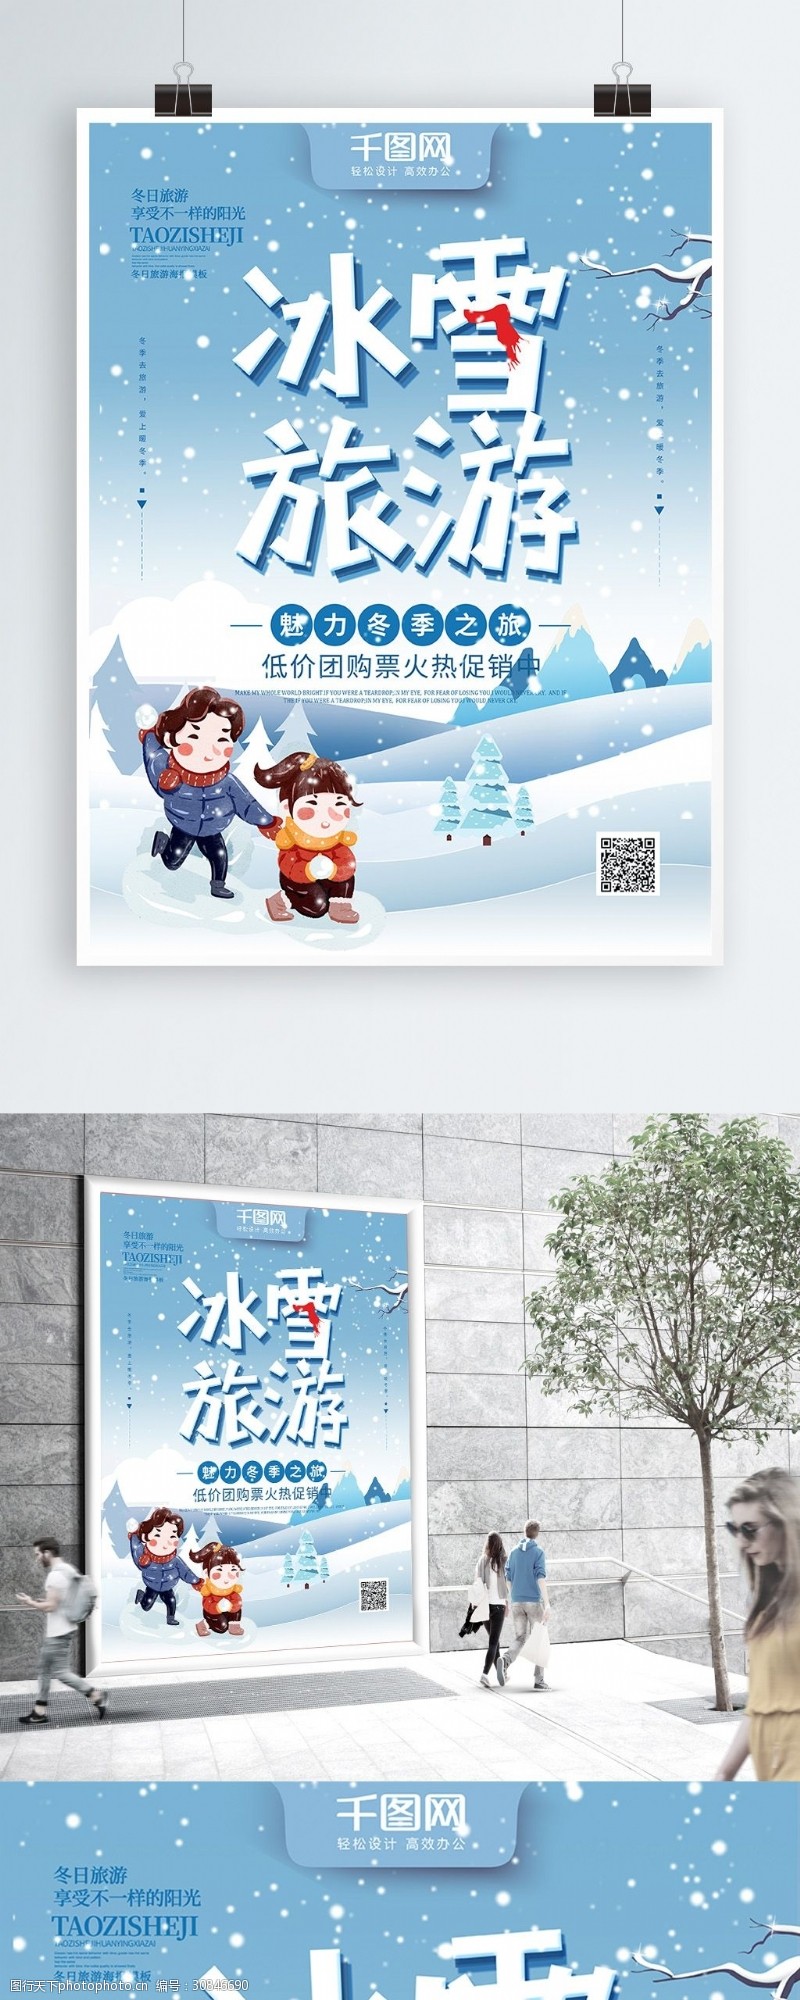 卡通雪地蓝色手绘插画创意字体冬季旅游冰雪旅游海报